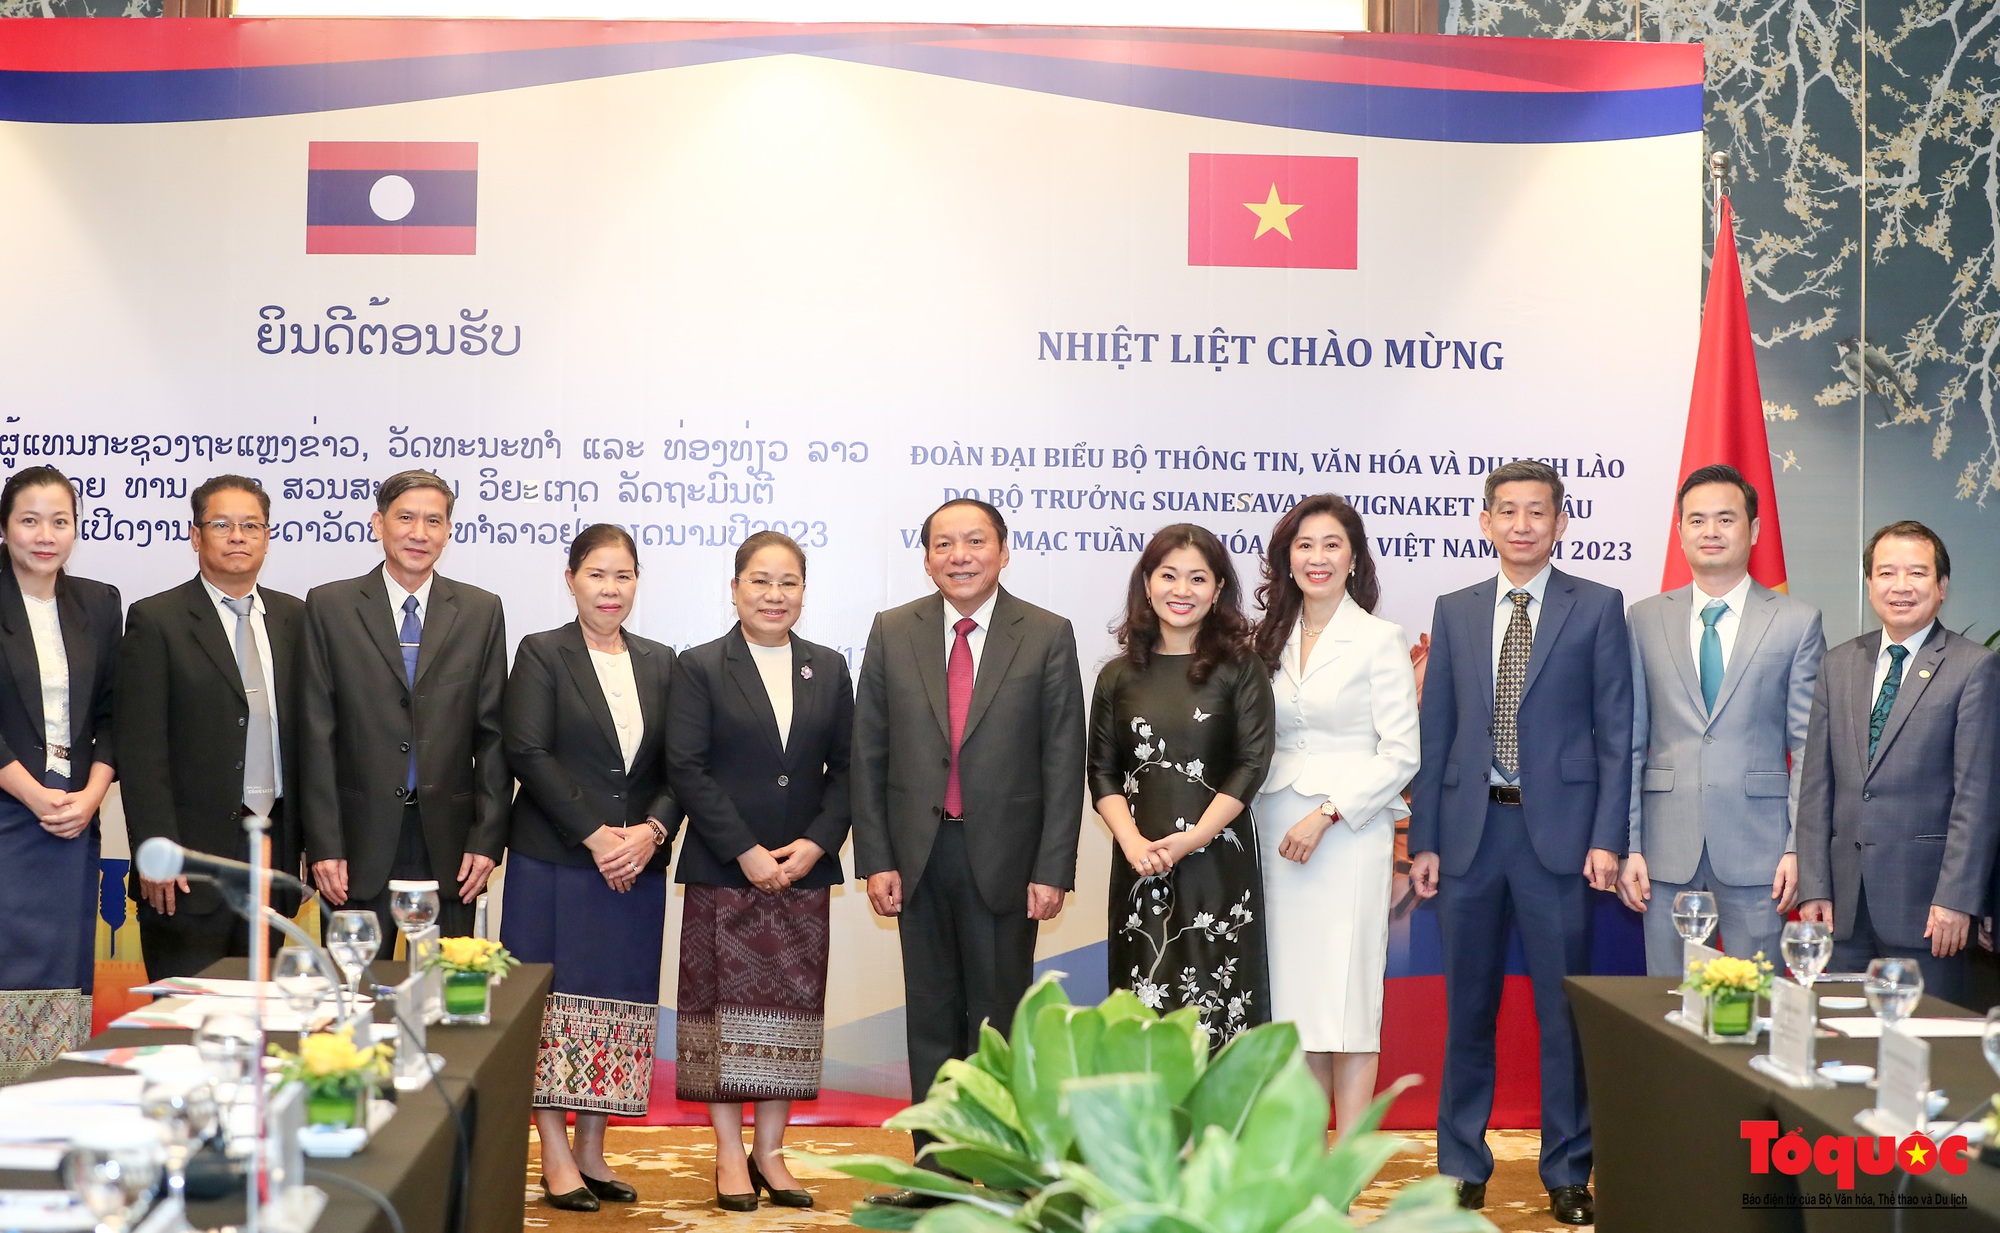 Chùm ảnh: Bộ trưởng Bộ VHTTDL Việt Nam hội đàm với Bộ Thông tin, Văn hóa và Du lịch Lào  - Ảnh 13.